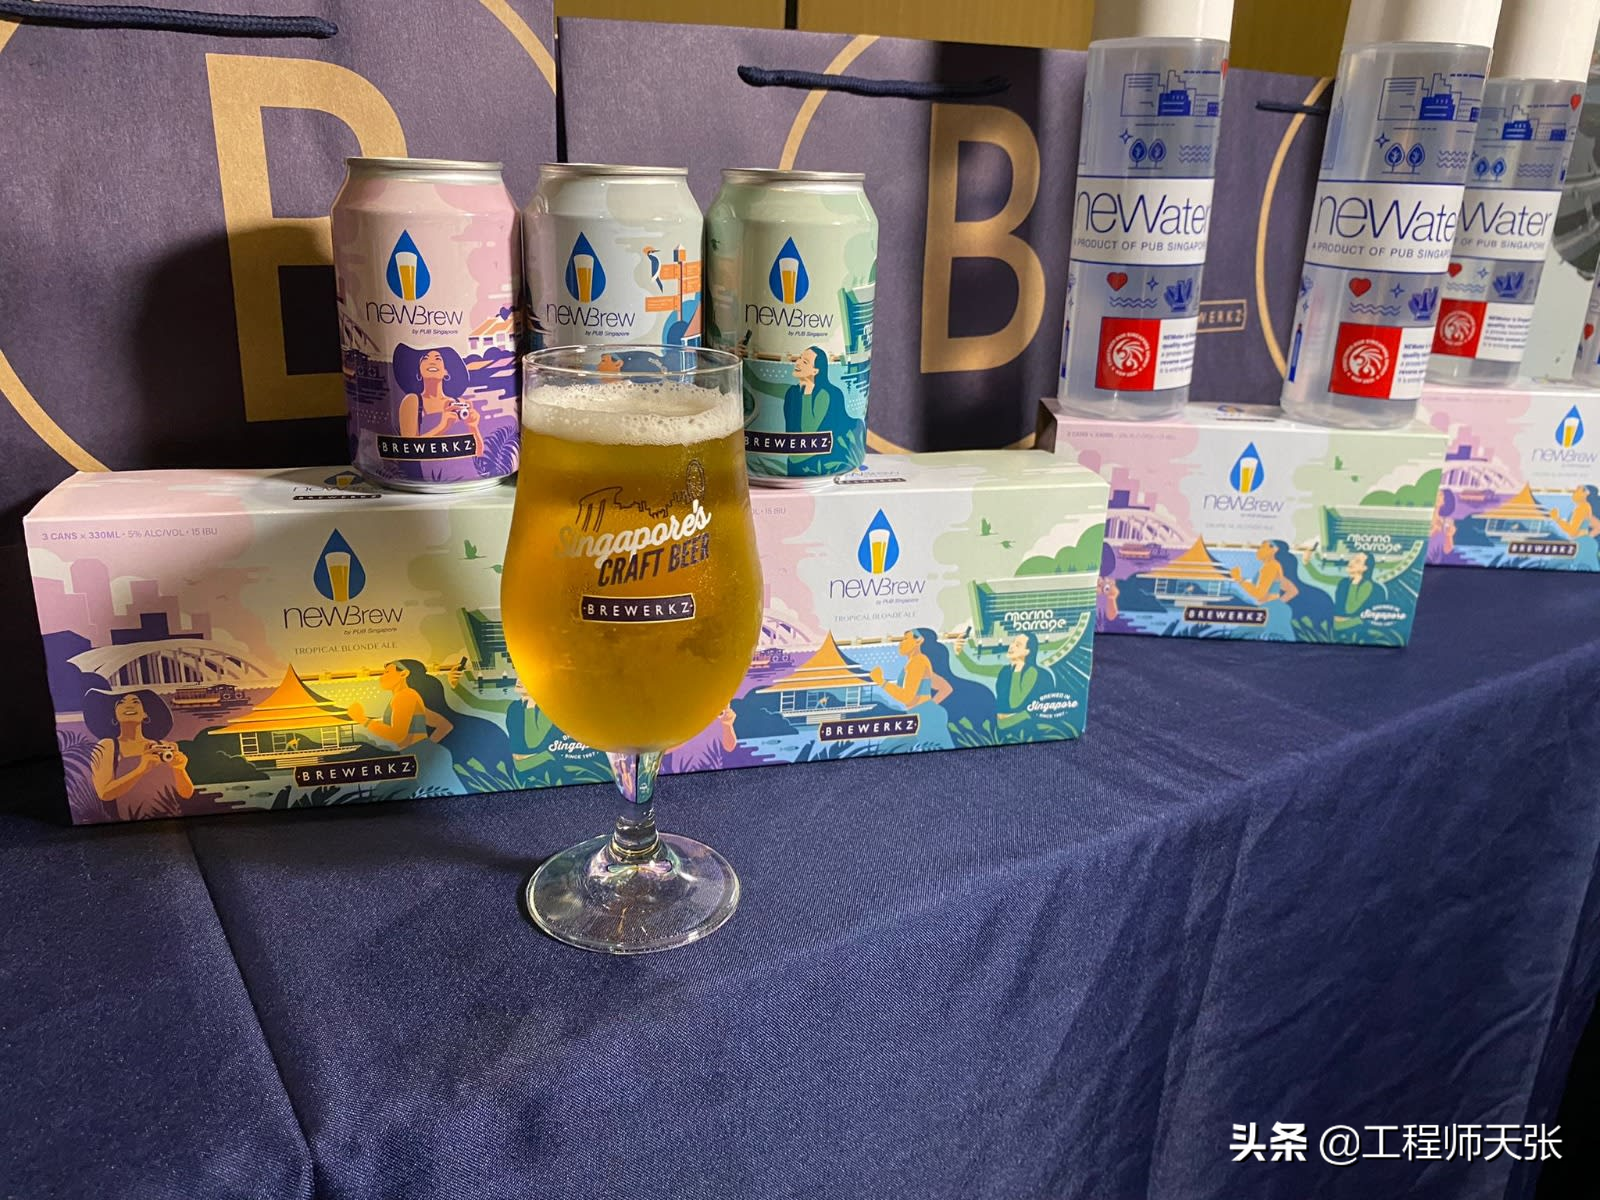 污水净化后酿啤酒，你敢喝吗？新加坡推出“新生啤” 新闻资讯 第3张